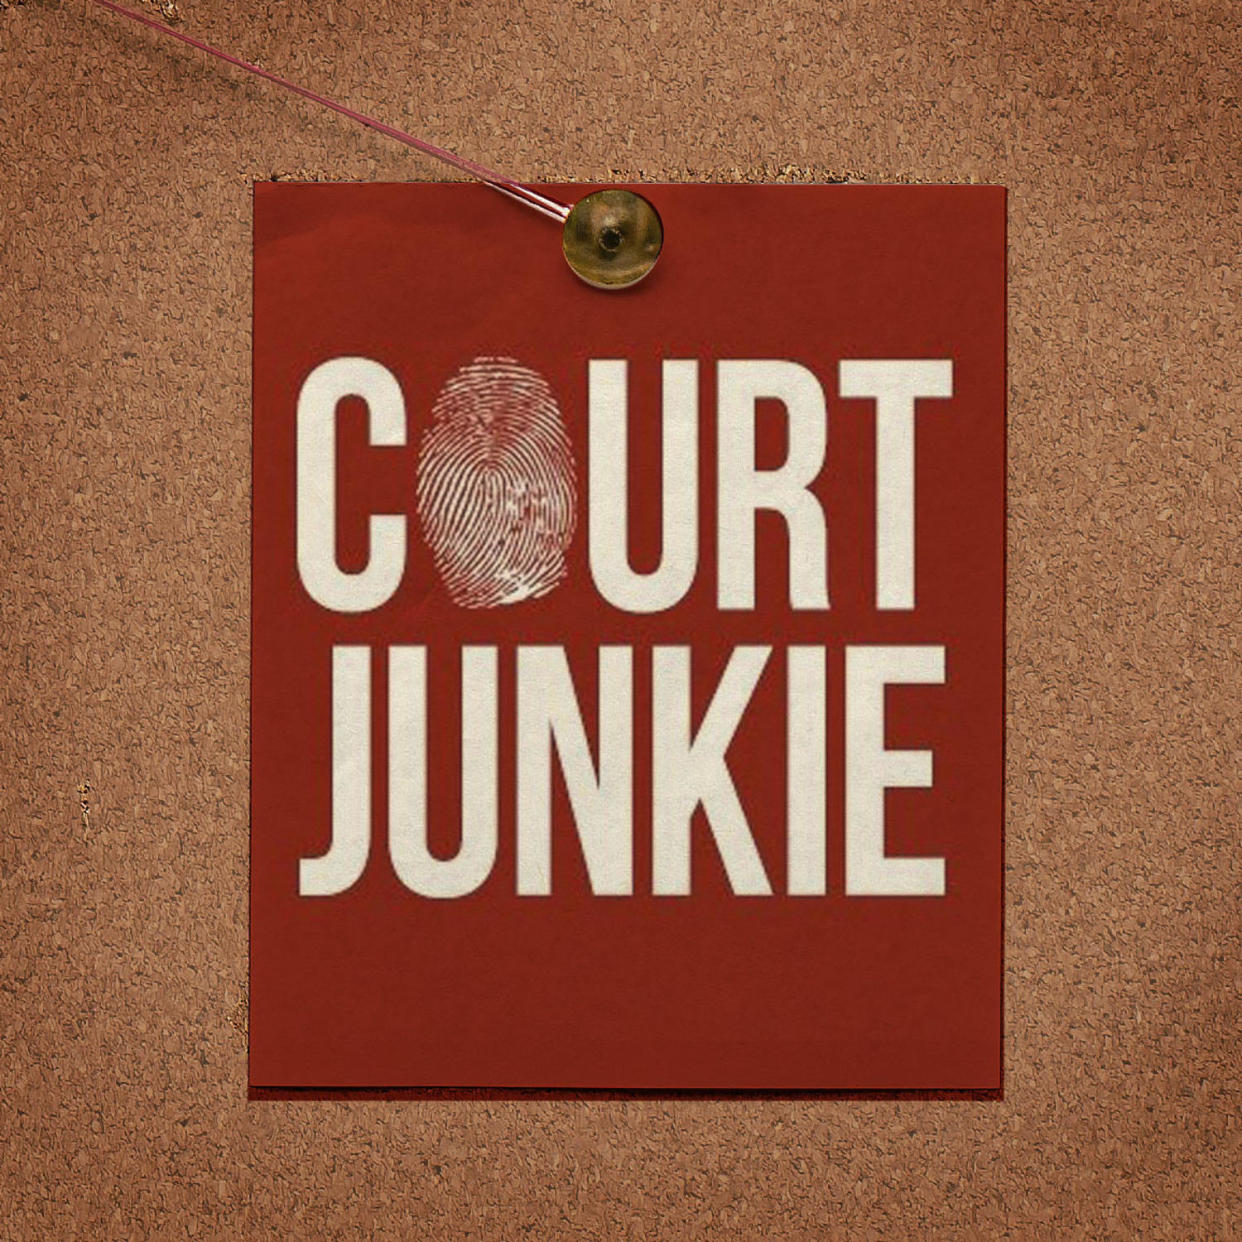 Court Junkie logo pinned to cork board (Kelsea Petersen / TODAY Iluustration)